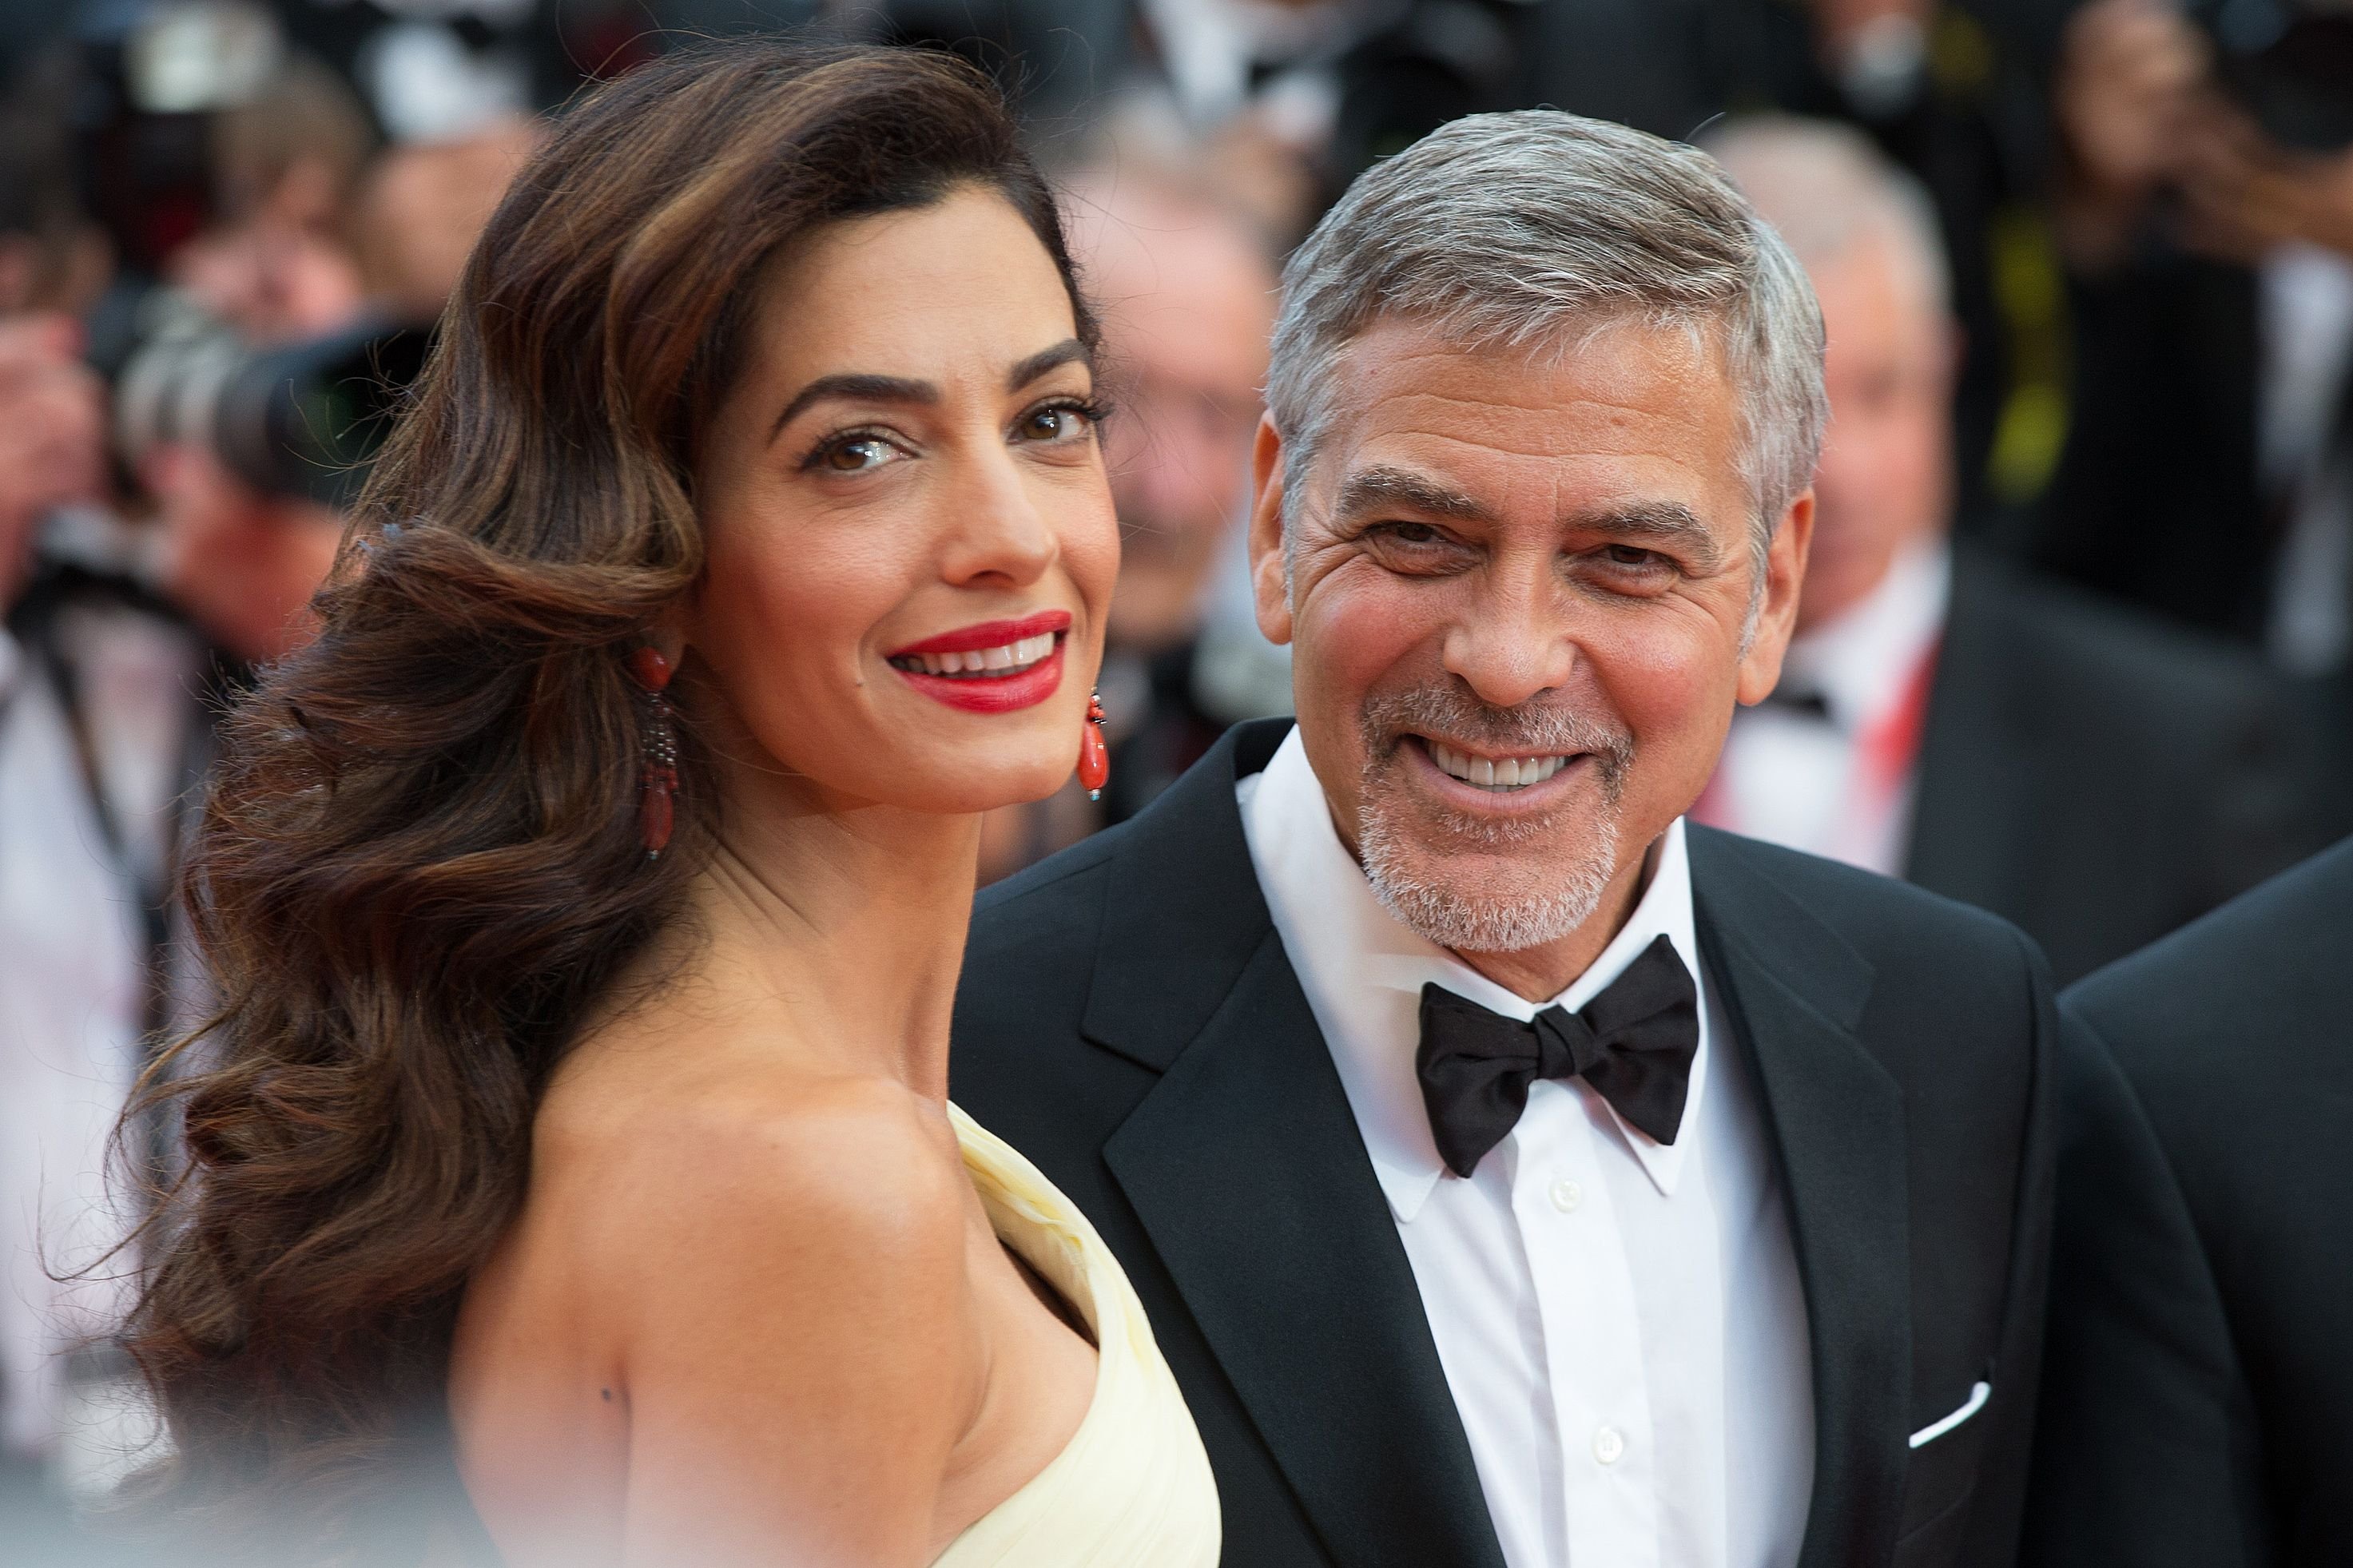 George und Amal Clooney bei den Filmfestspielen von Cannes 2016 für die Vorführung von "Money Monster" | Quelle: Shutterstock